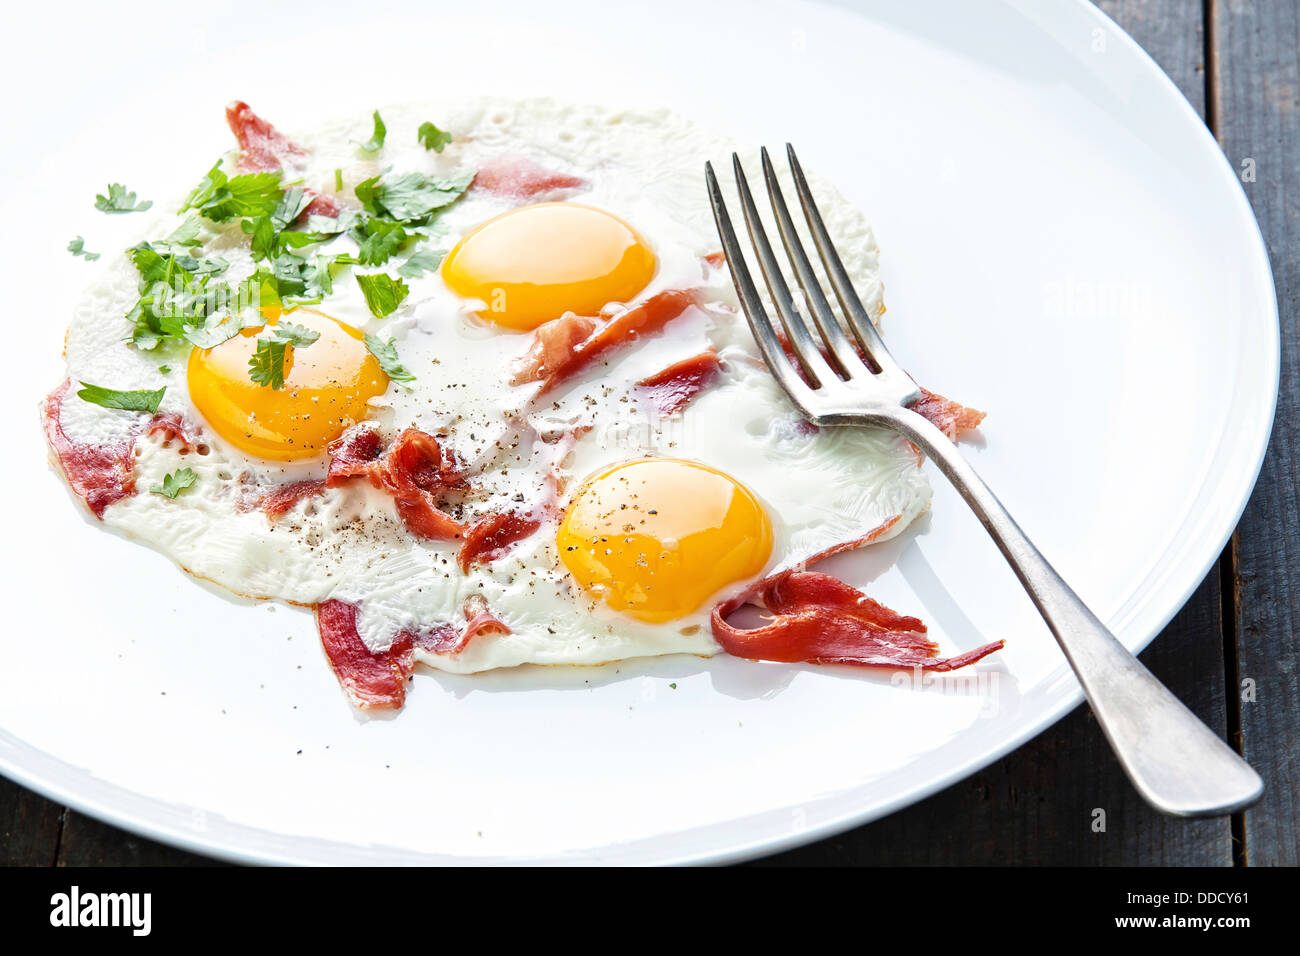 Desayuno tradicional con huevos y tocino en la placa blanca. Foto de stock